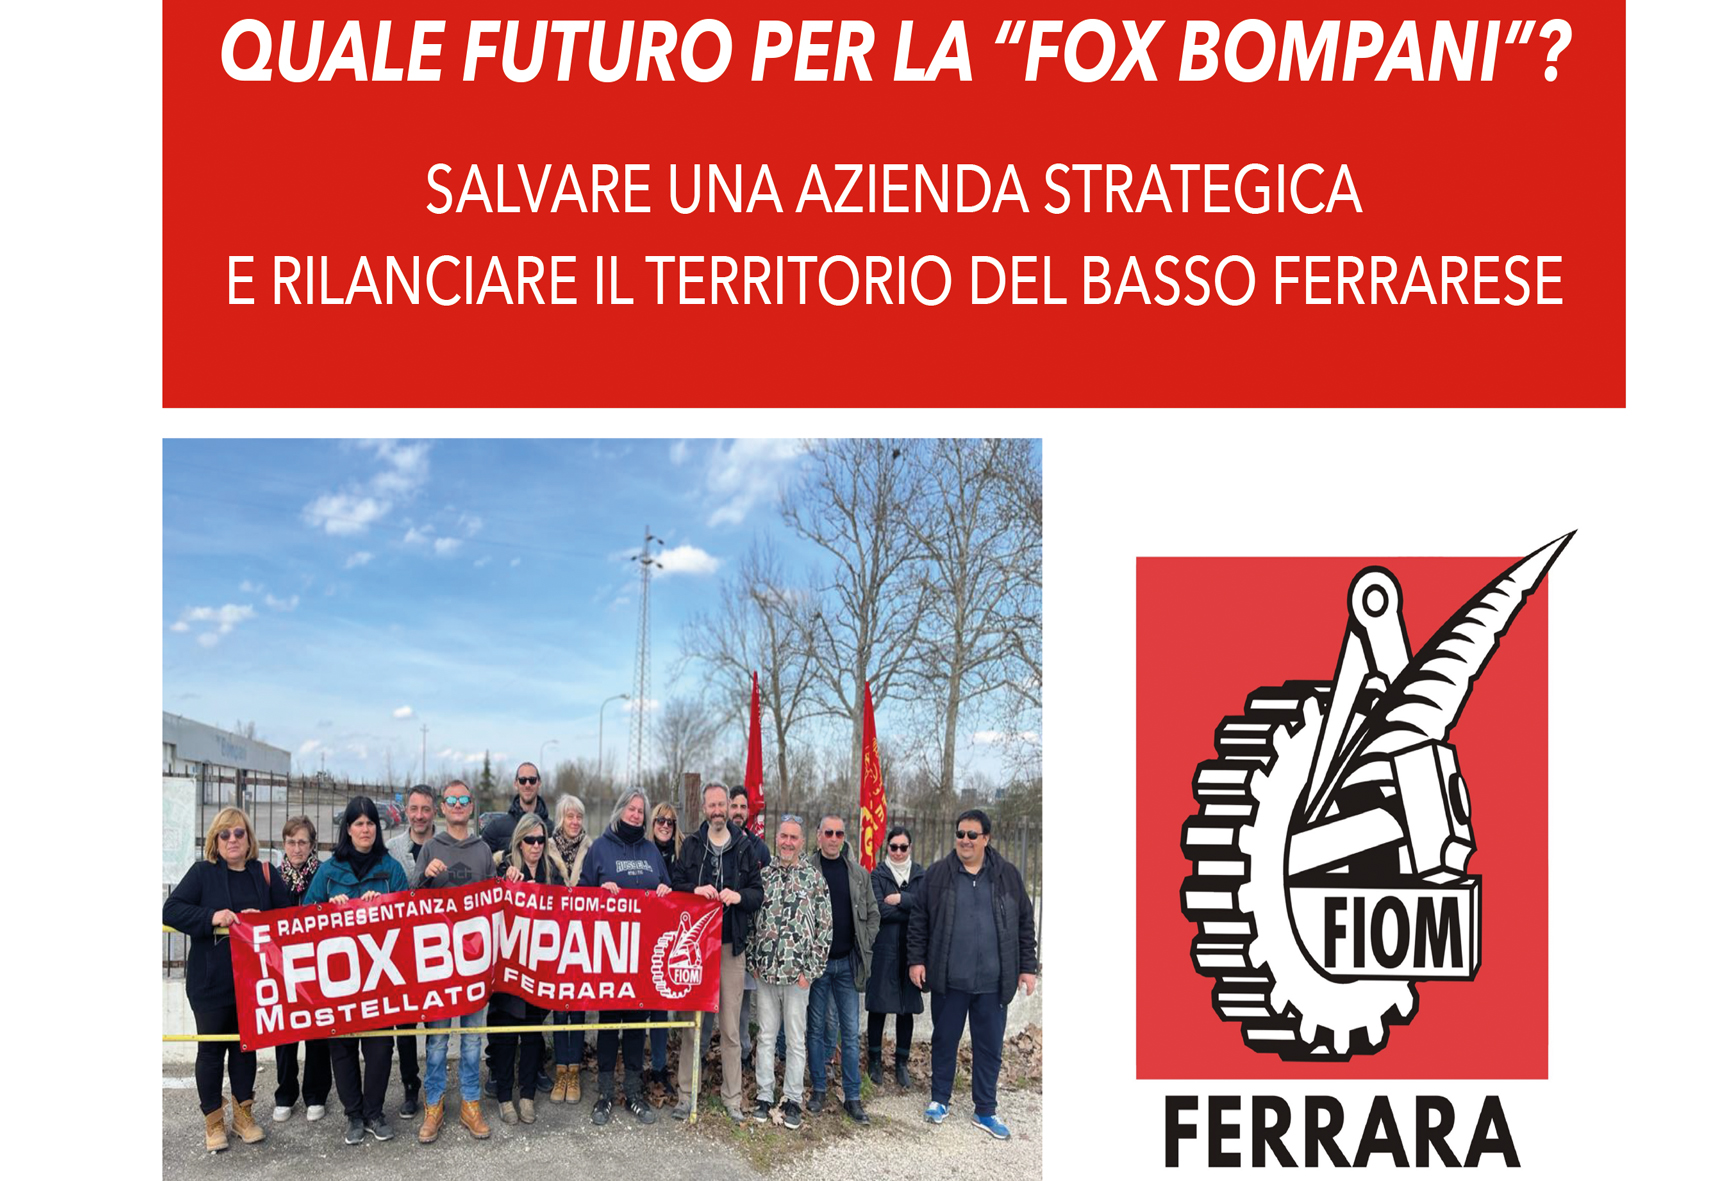 Quale futuro per la Fox Bompani?